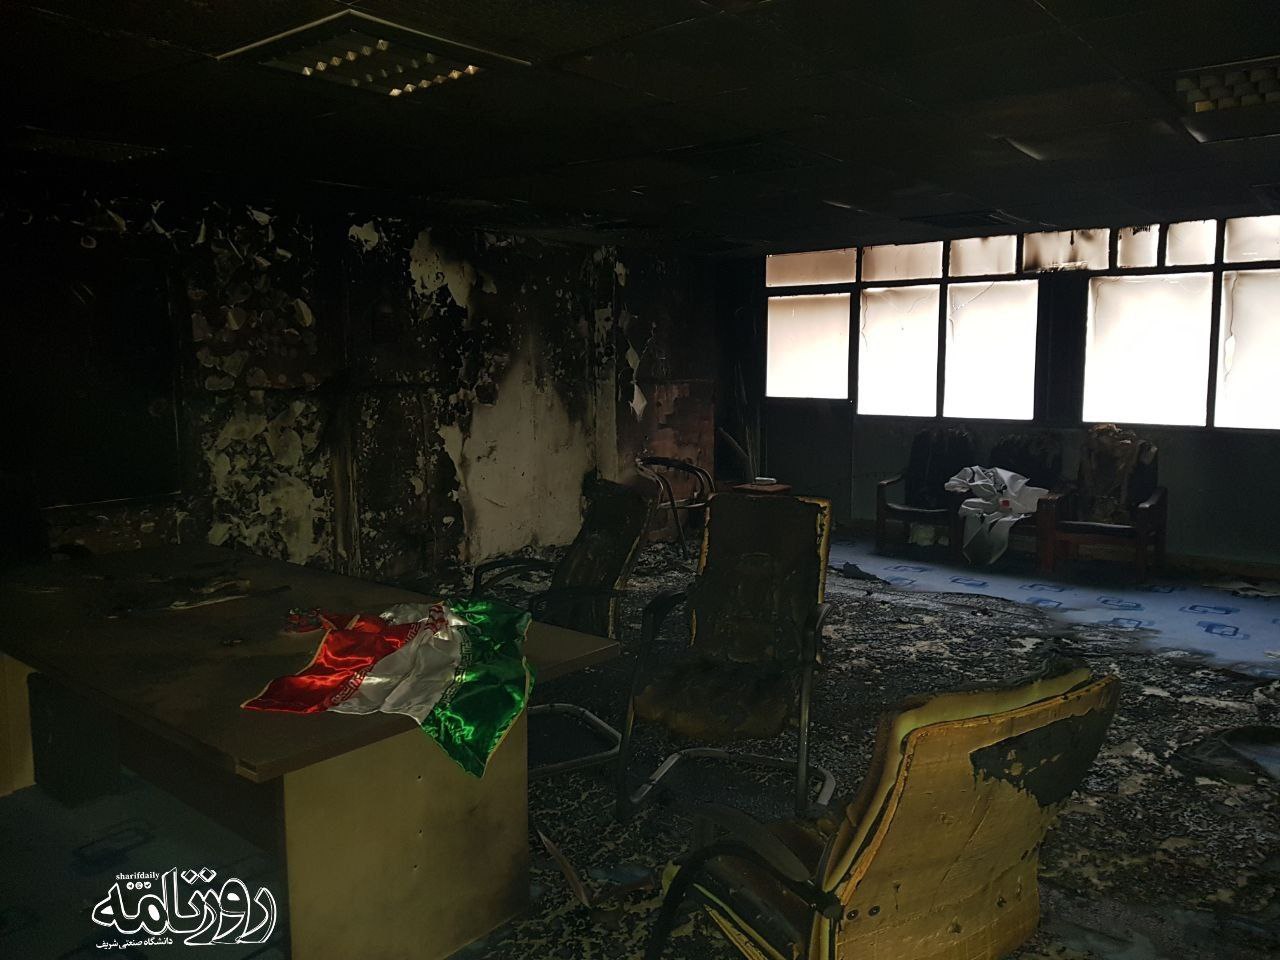 بسیج دانشگاه شریف آتش گرفت